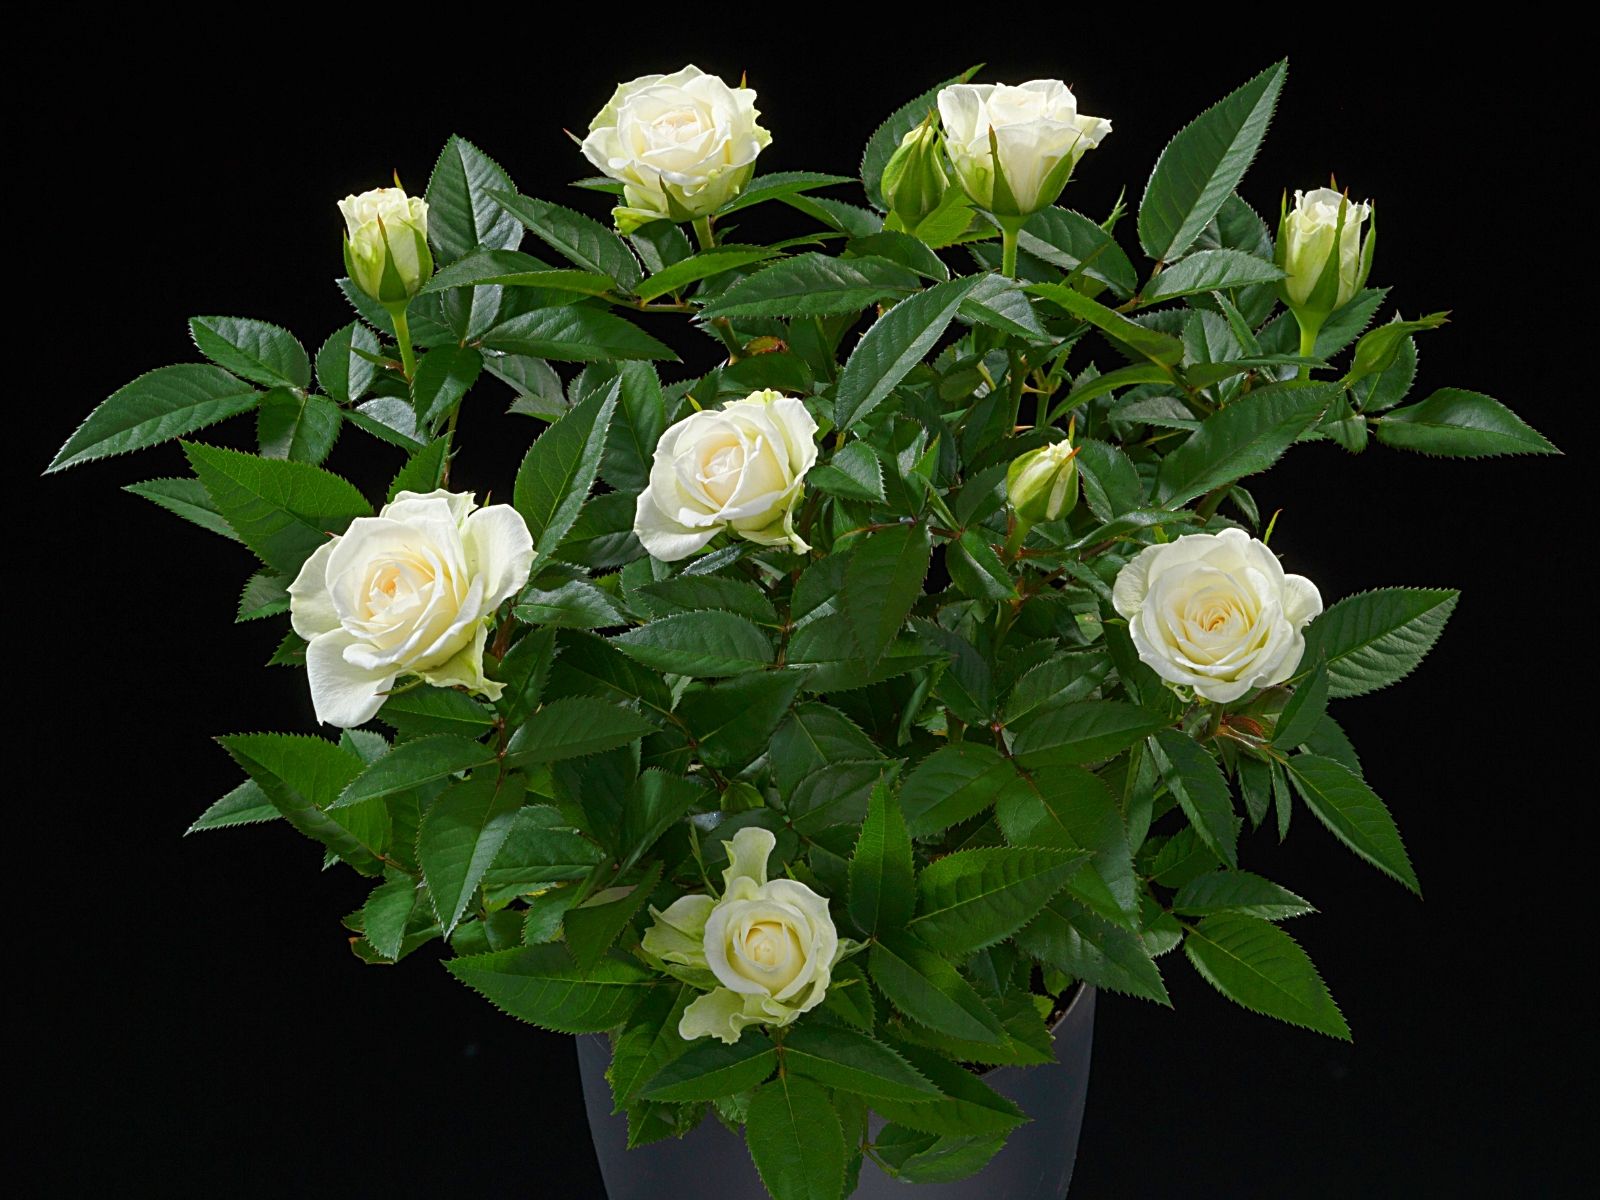 De Ruiter - Creating Flower Business - on Thursd - White Jewel